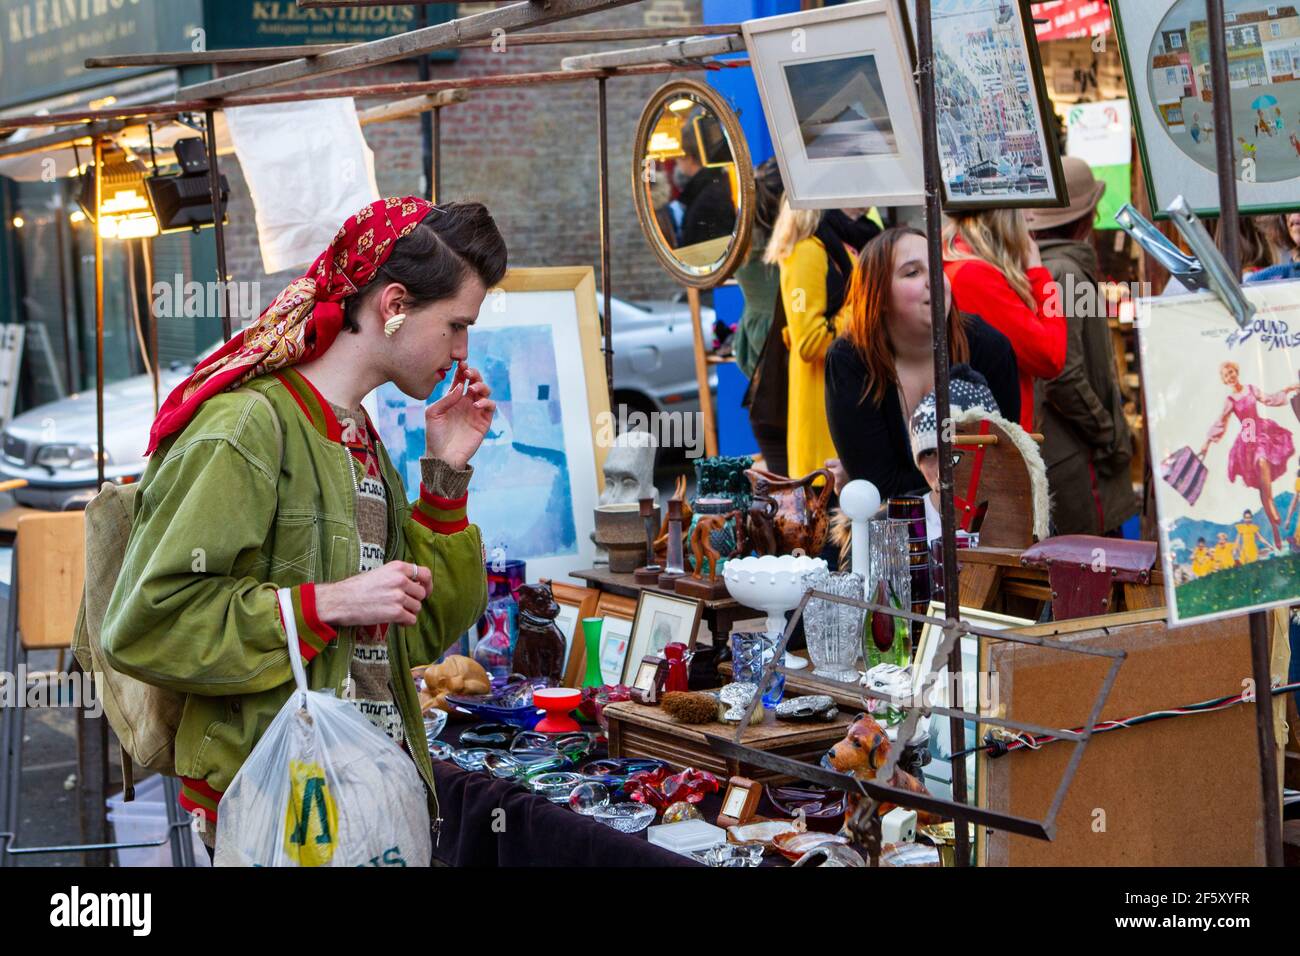 El mercado callejero de Londres Foto de stock